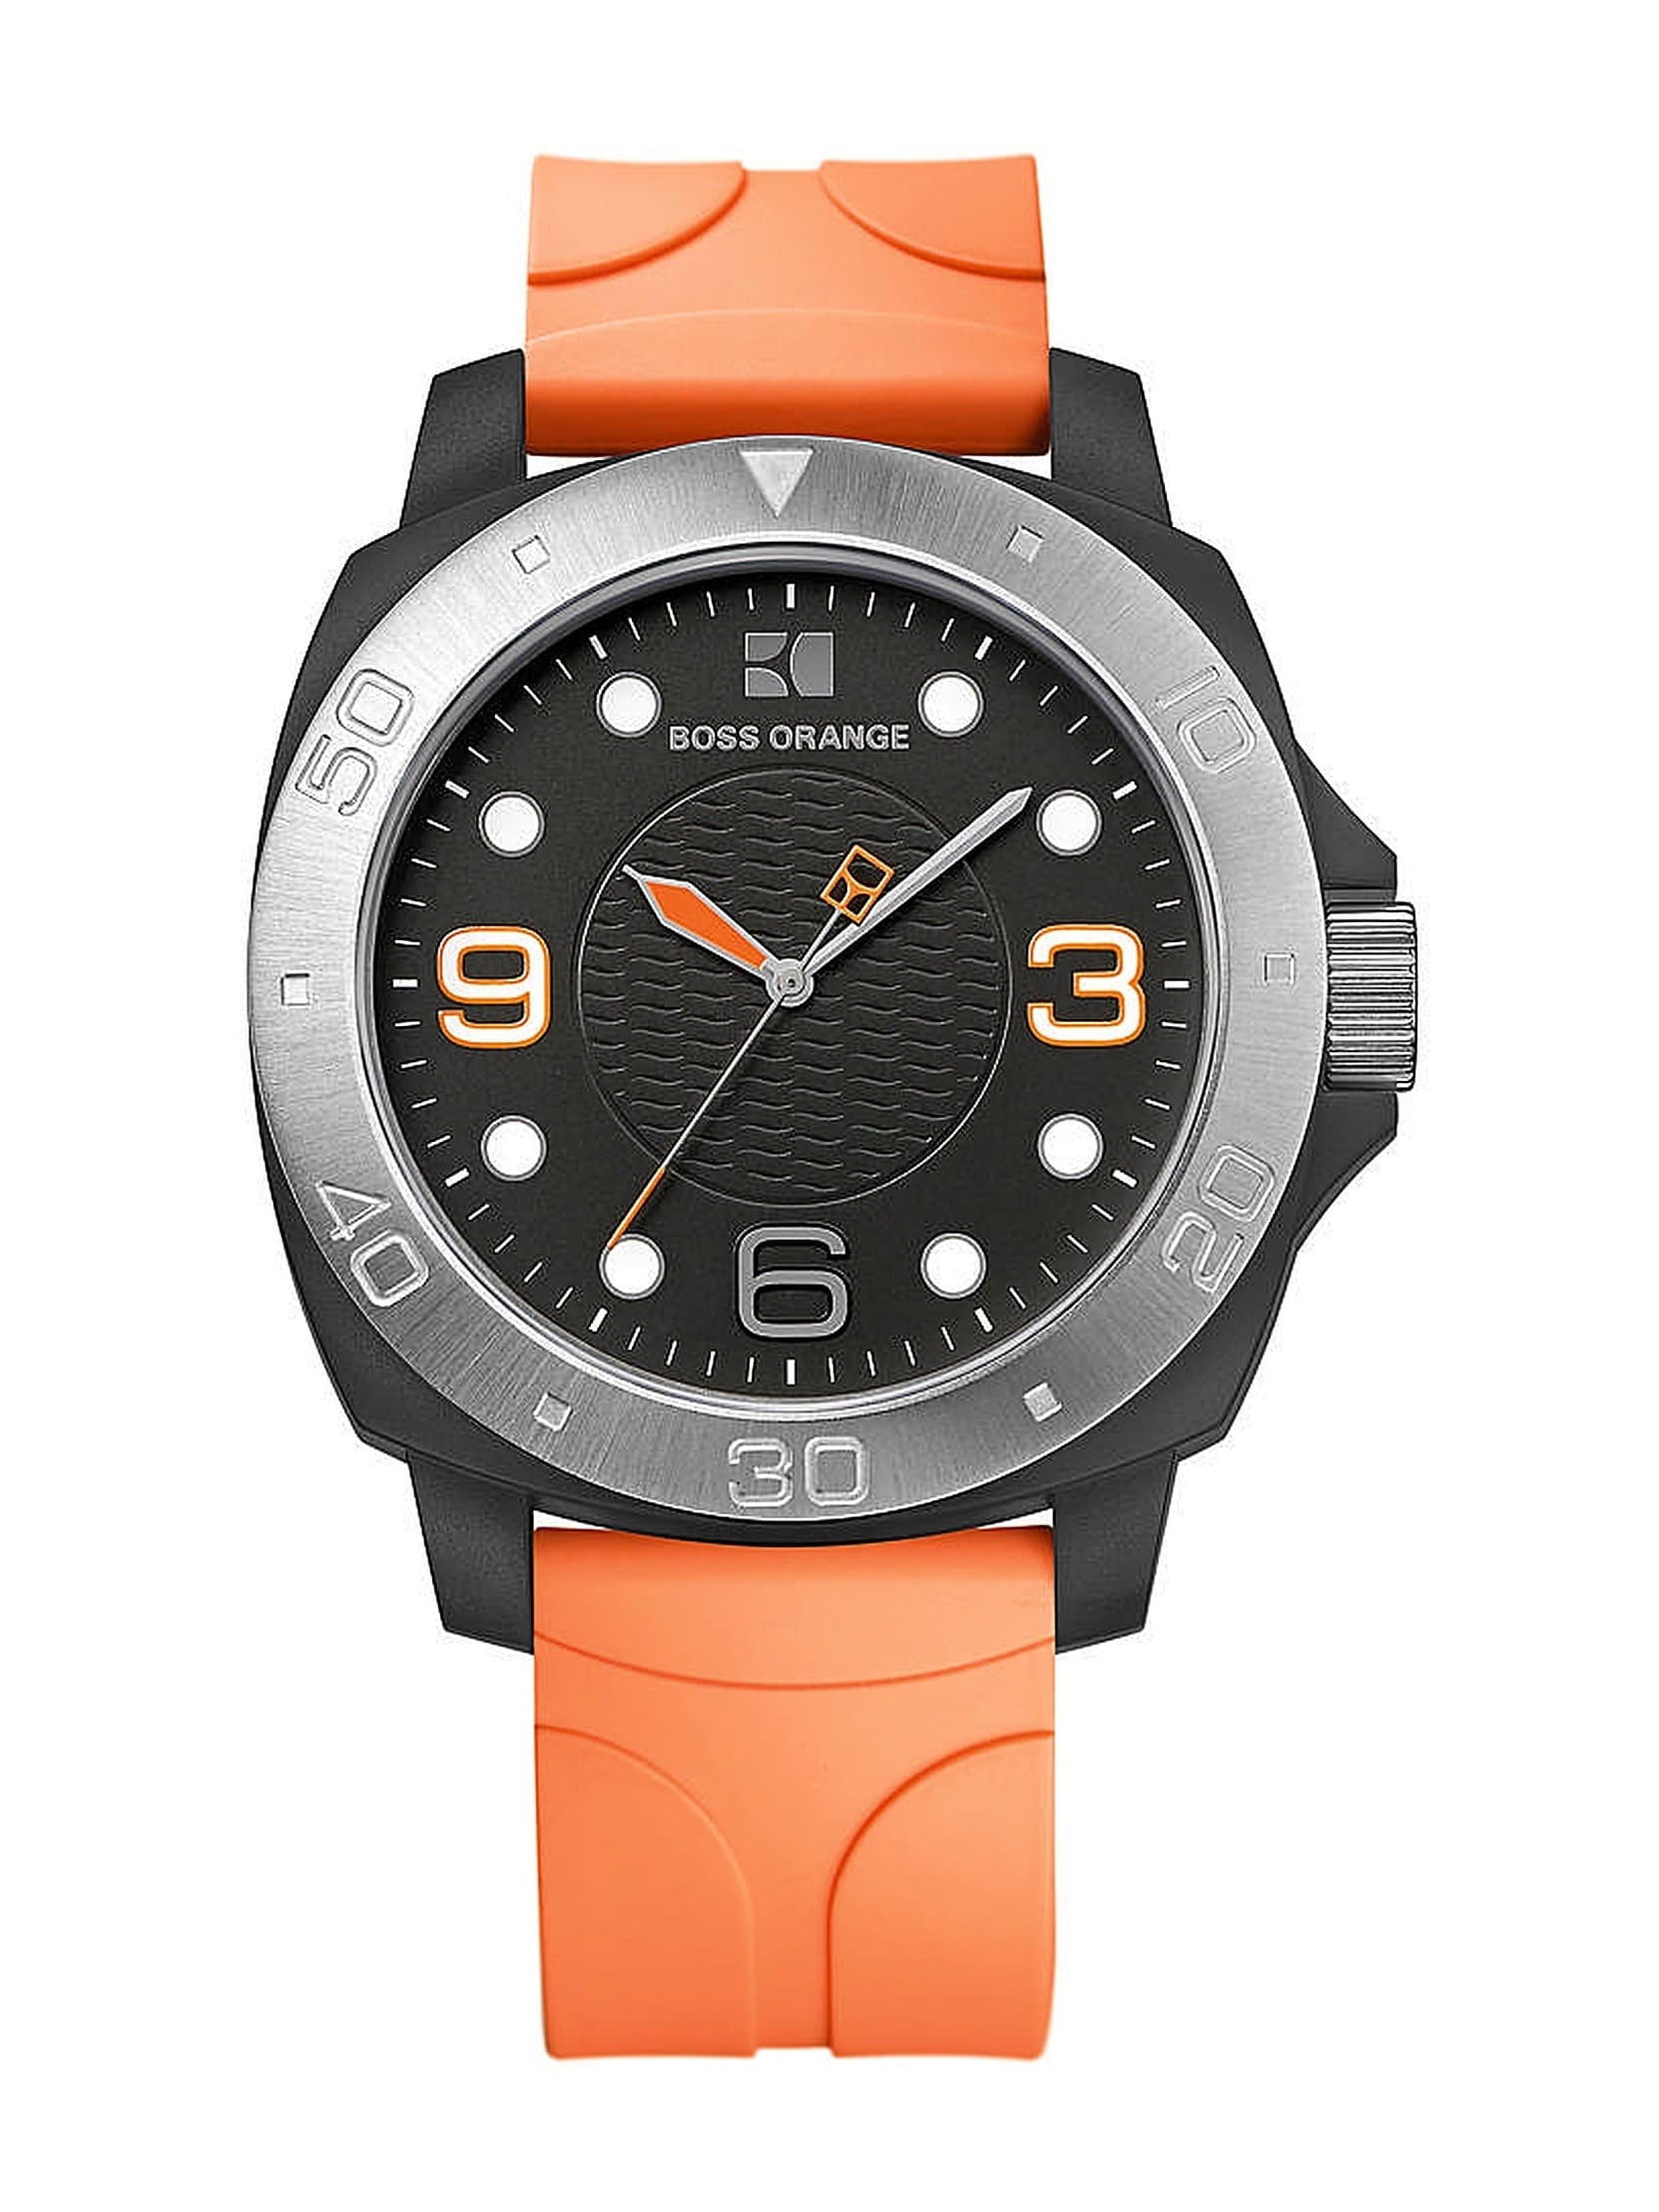 Pelgrim deuropening delen Hugo Boss Orange Men's Watch 1512665 - Walmart.com